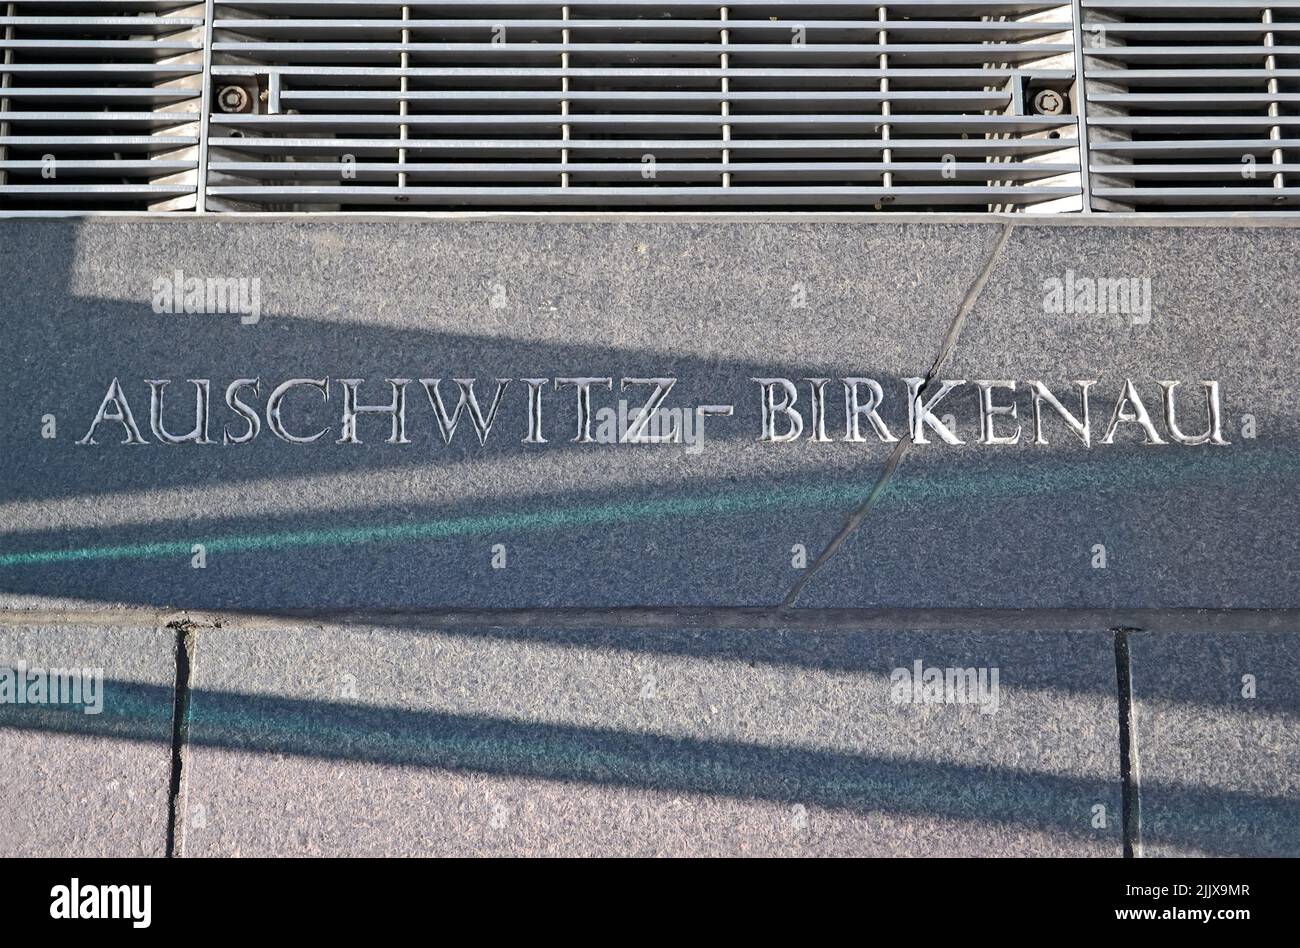 auschwitz - camp de concentration de birkenau, message sur la fermeture du mur de pierre, holocauste, diversité des lieux de stress européens Banque D'Images